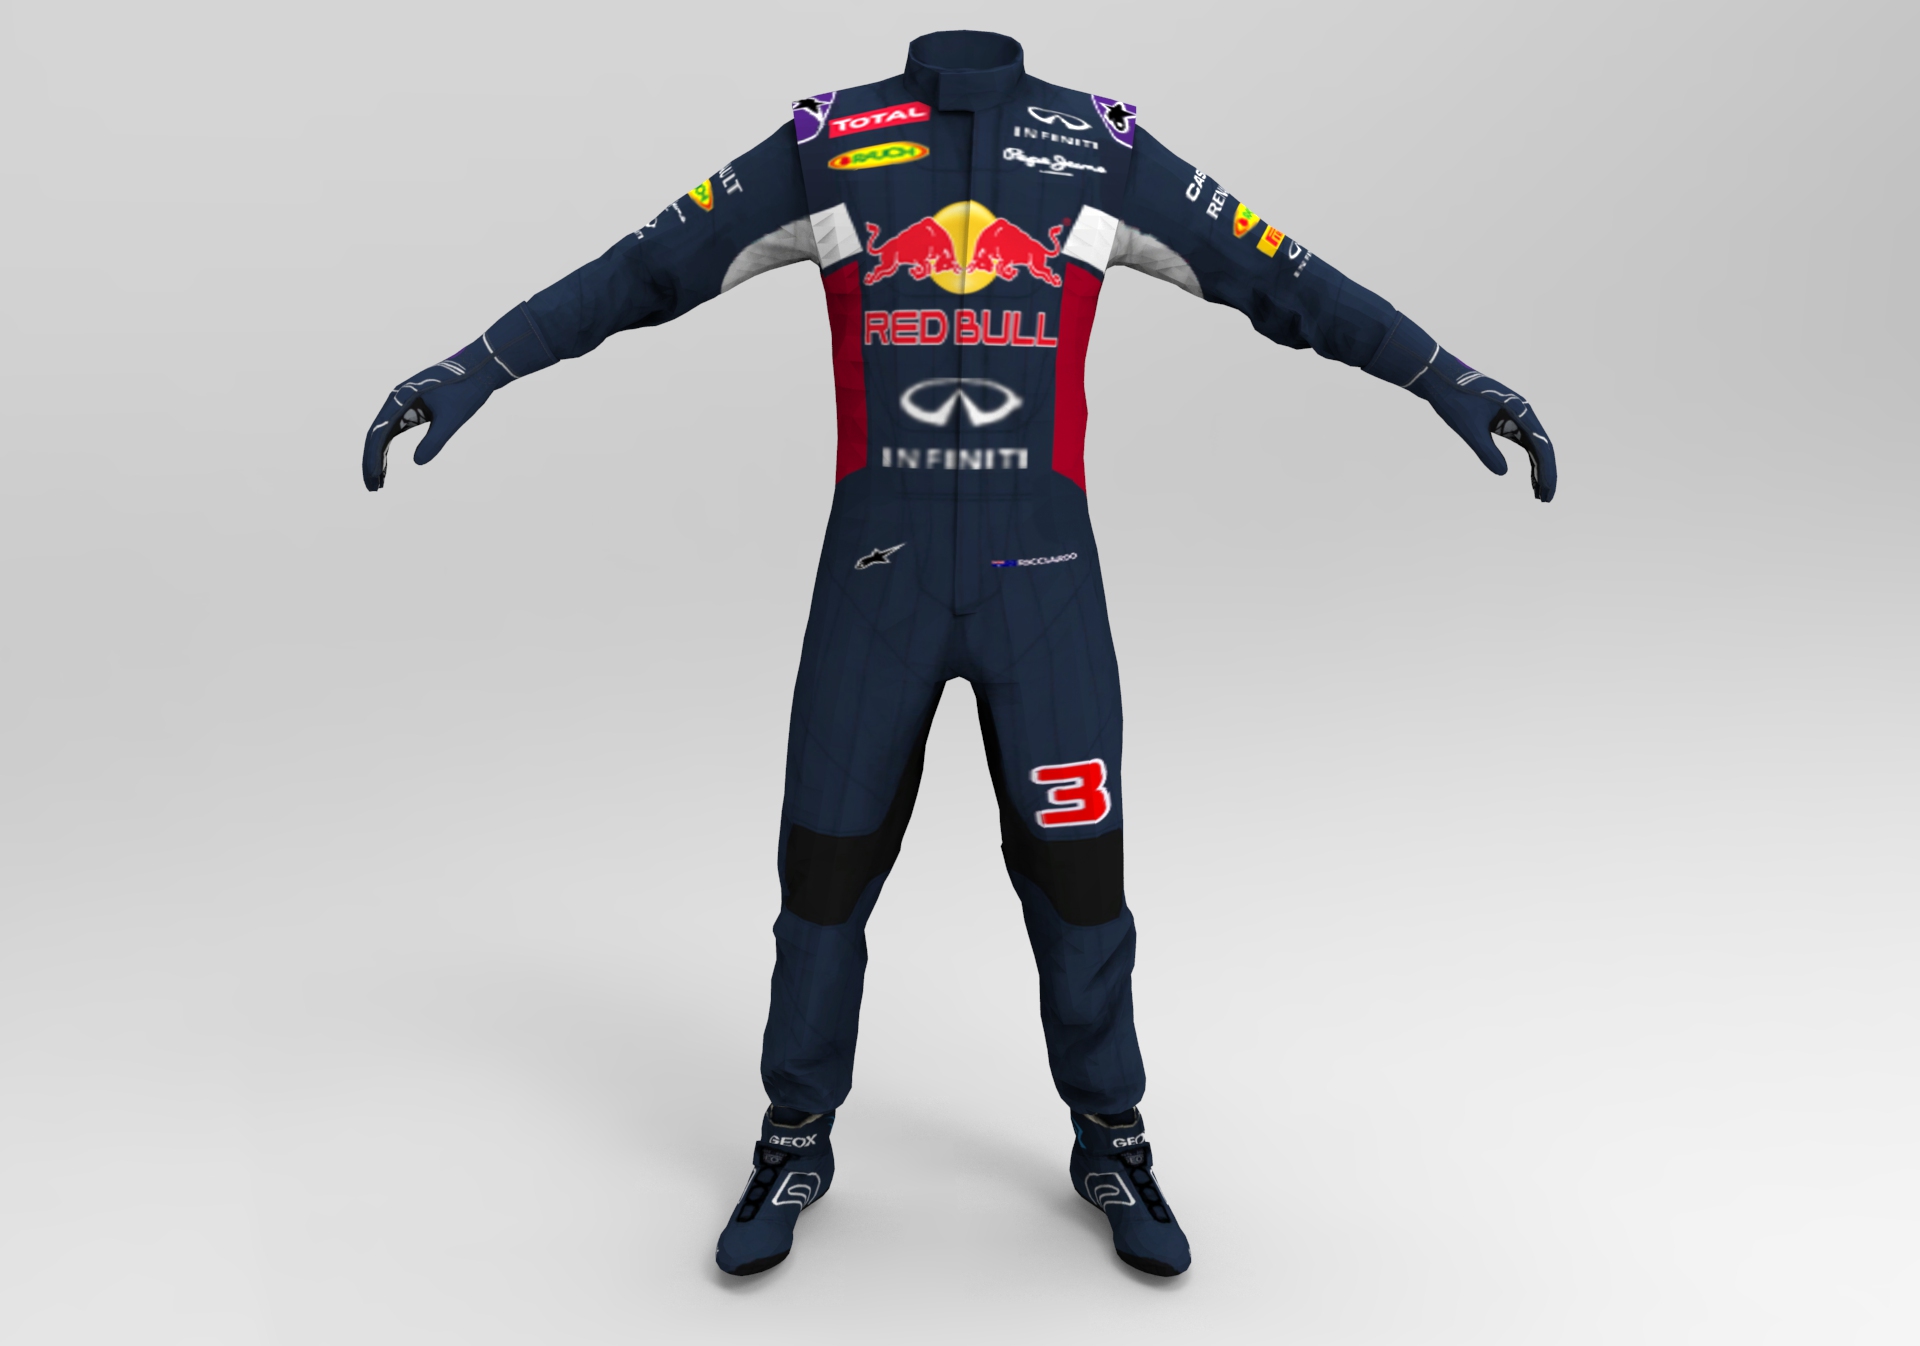 Ricciardo.jpg